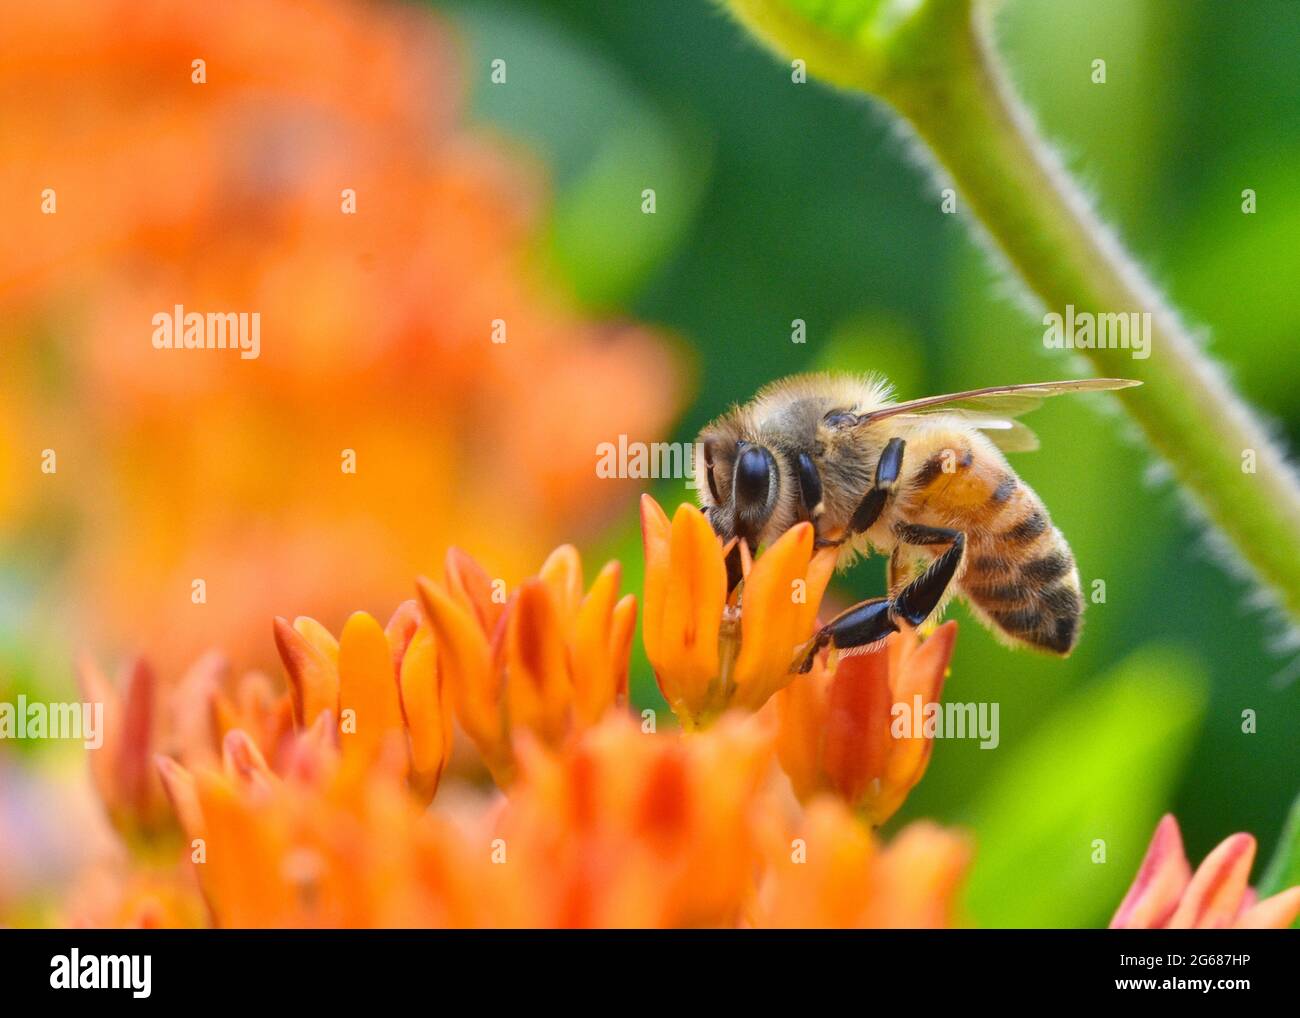 Gros plan d'une abeille (APIs mellifera) qui recueille le nectar et le pollen d'une fleur de papillons (Asclepias tuberosa.) Copier l'espace. Banque D'Images